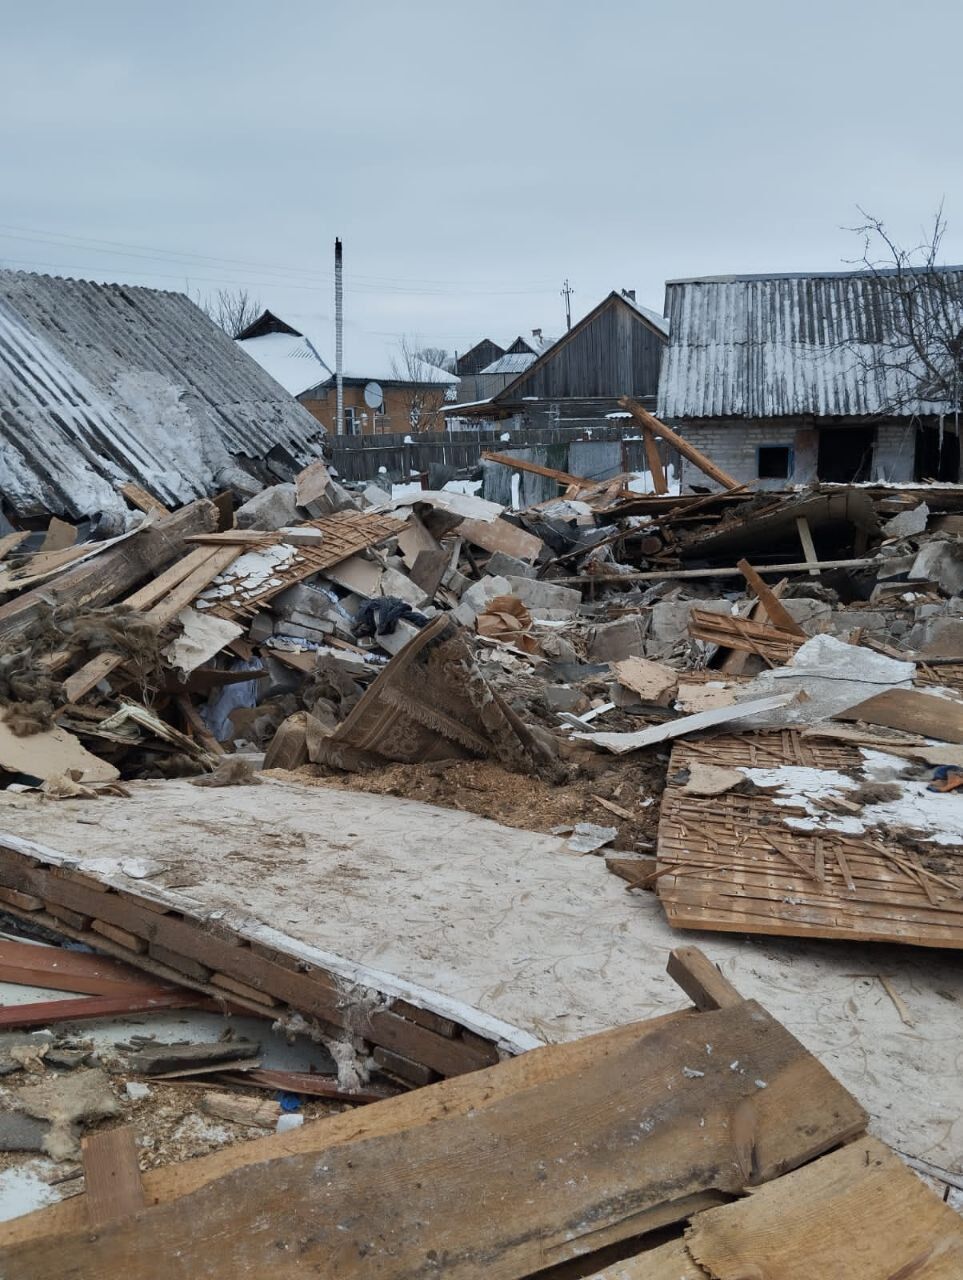 Війська РФ вдарили з РСЗВ по житлових будинках на Сумщині: троє людей загинуло, серед жертв є дитина. Фото